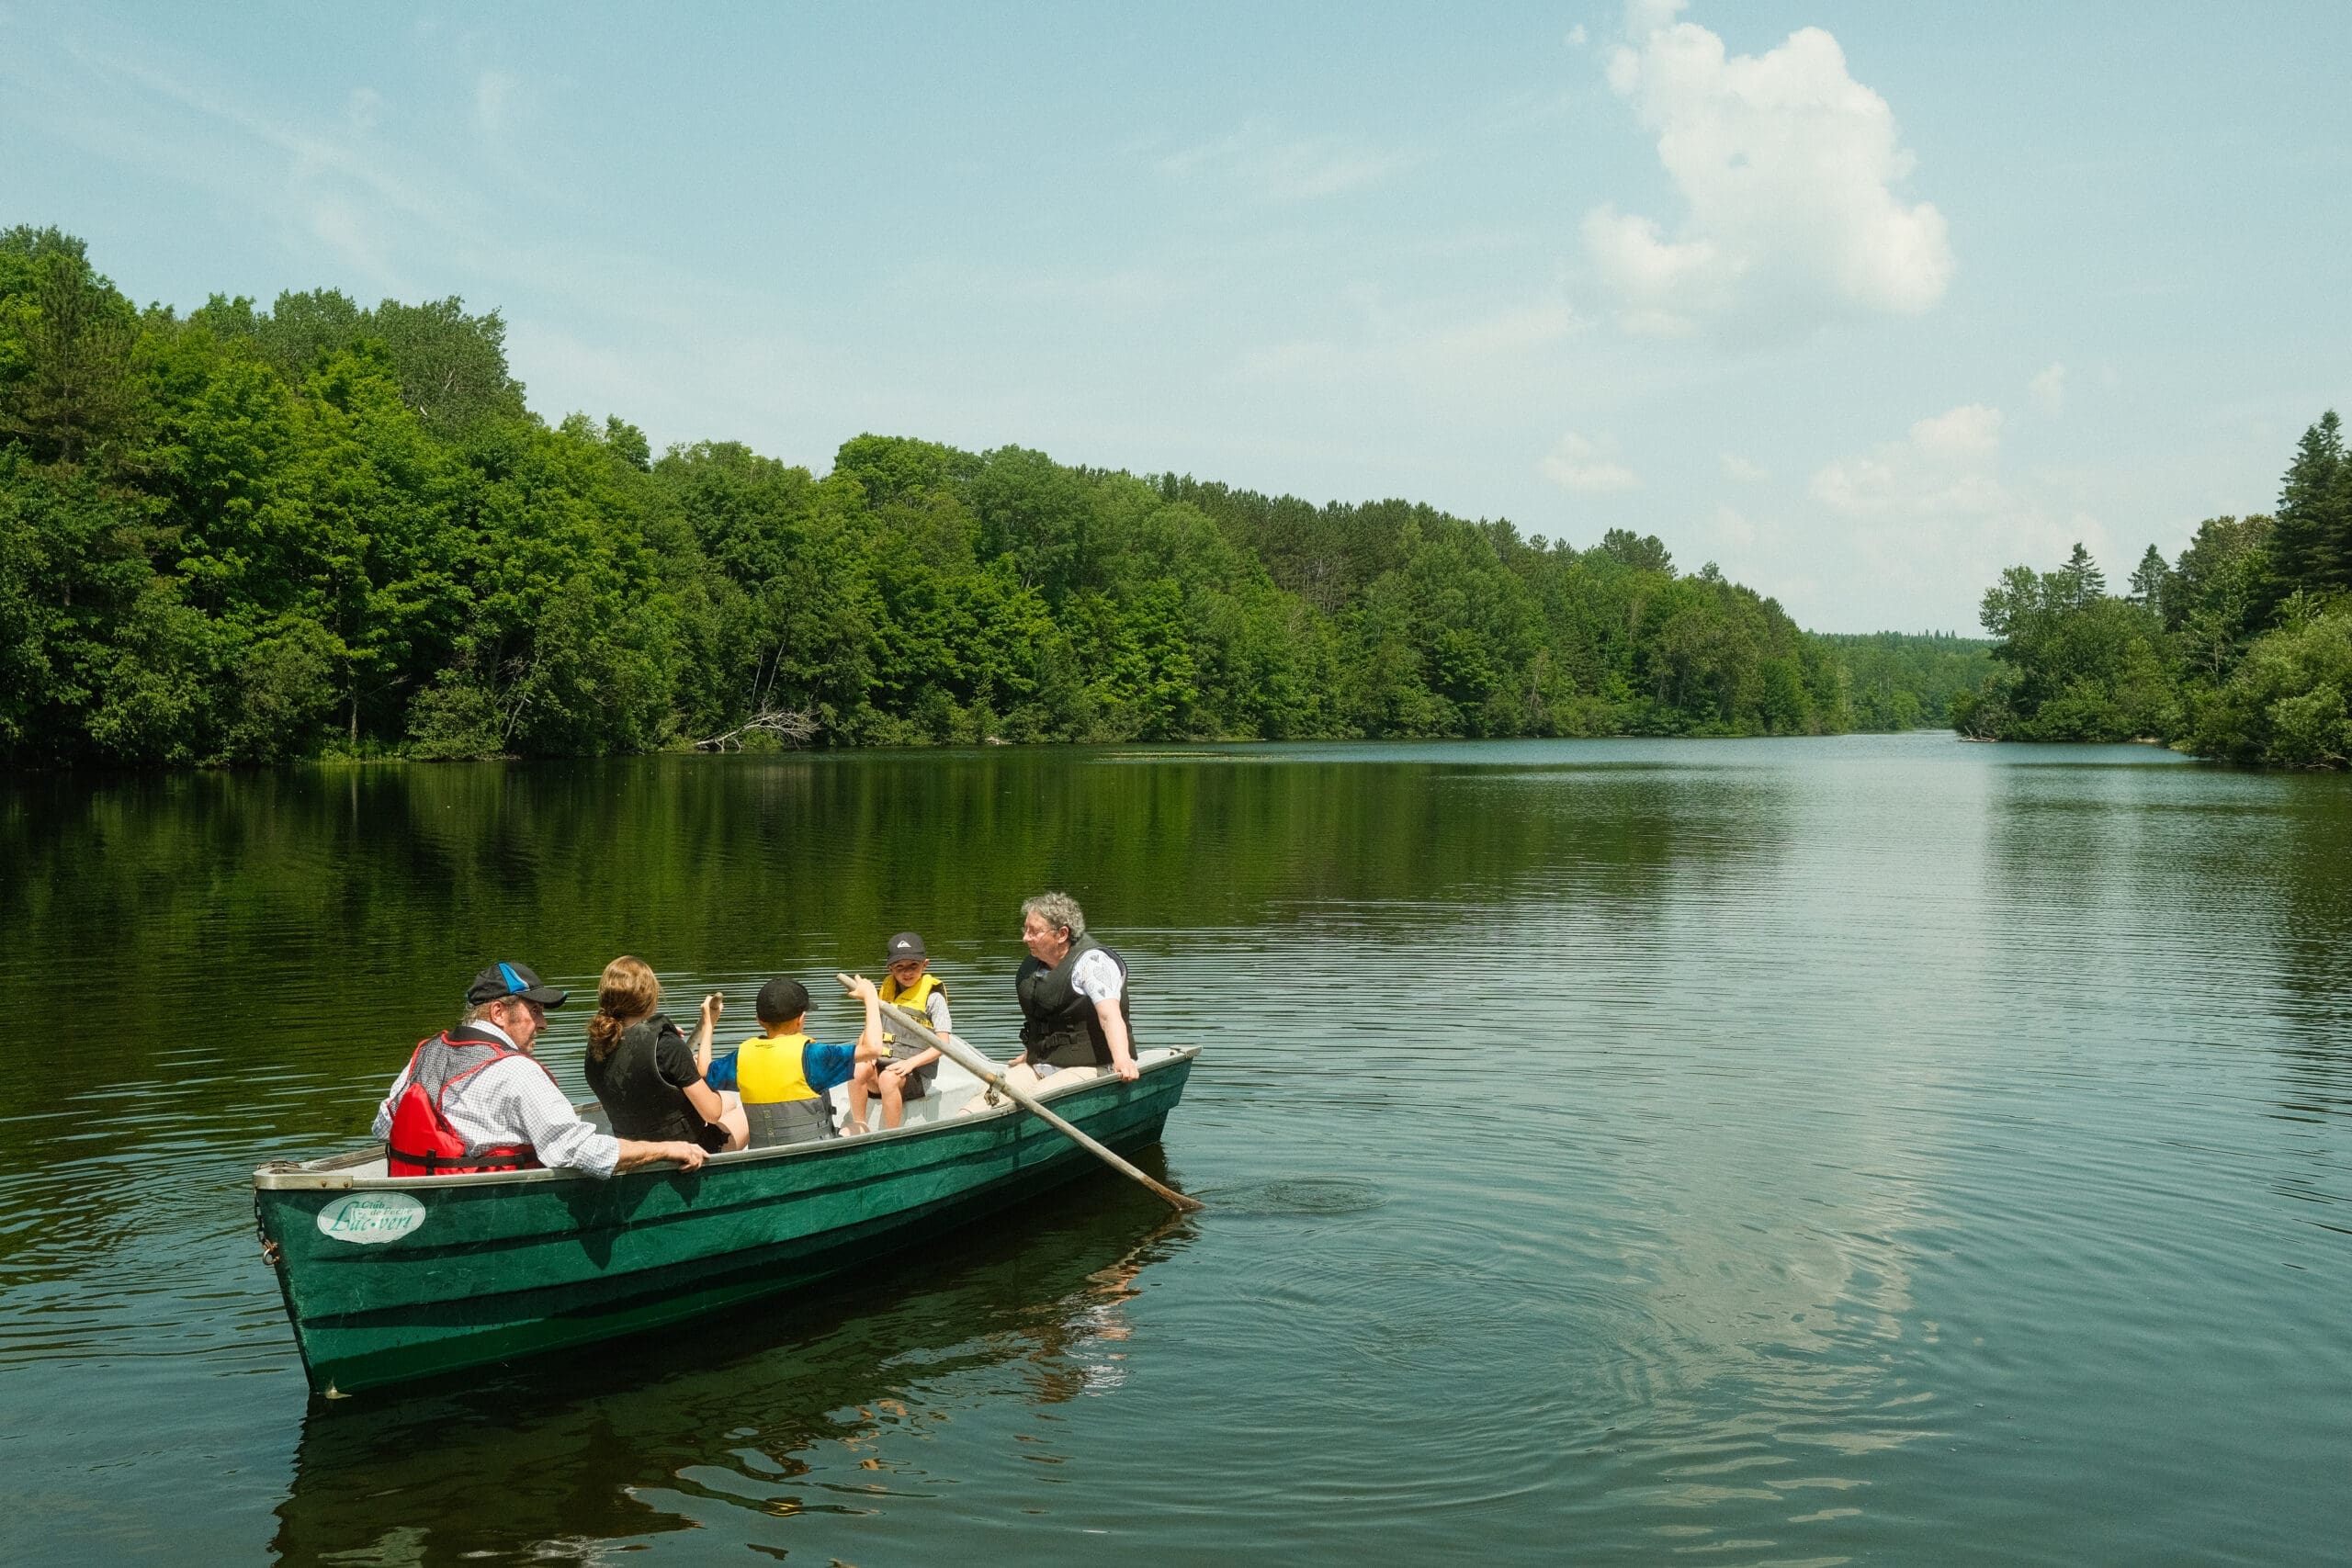 Un groupe de cinq personnes, dont des enfants et des adultes, profite d'une sereine promenade en bateau sur un lac calme entouré de forêts verdoyantes sous un ciel bleu clair.